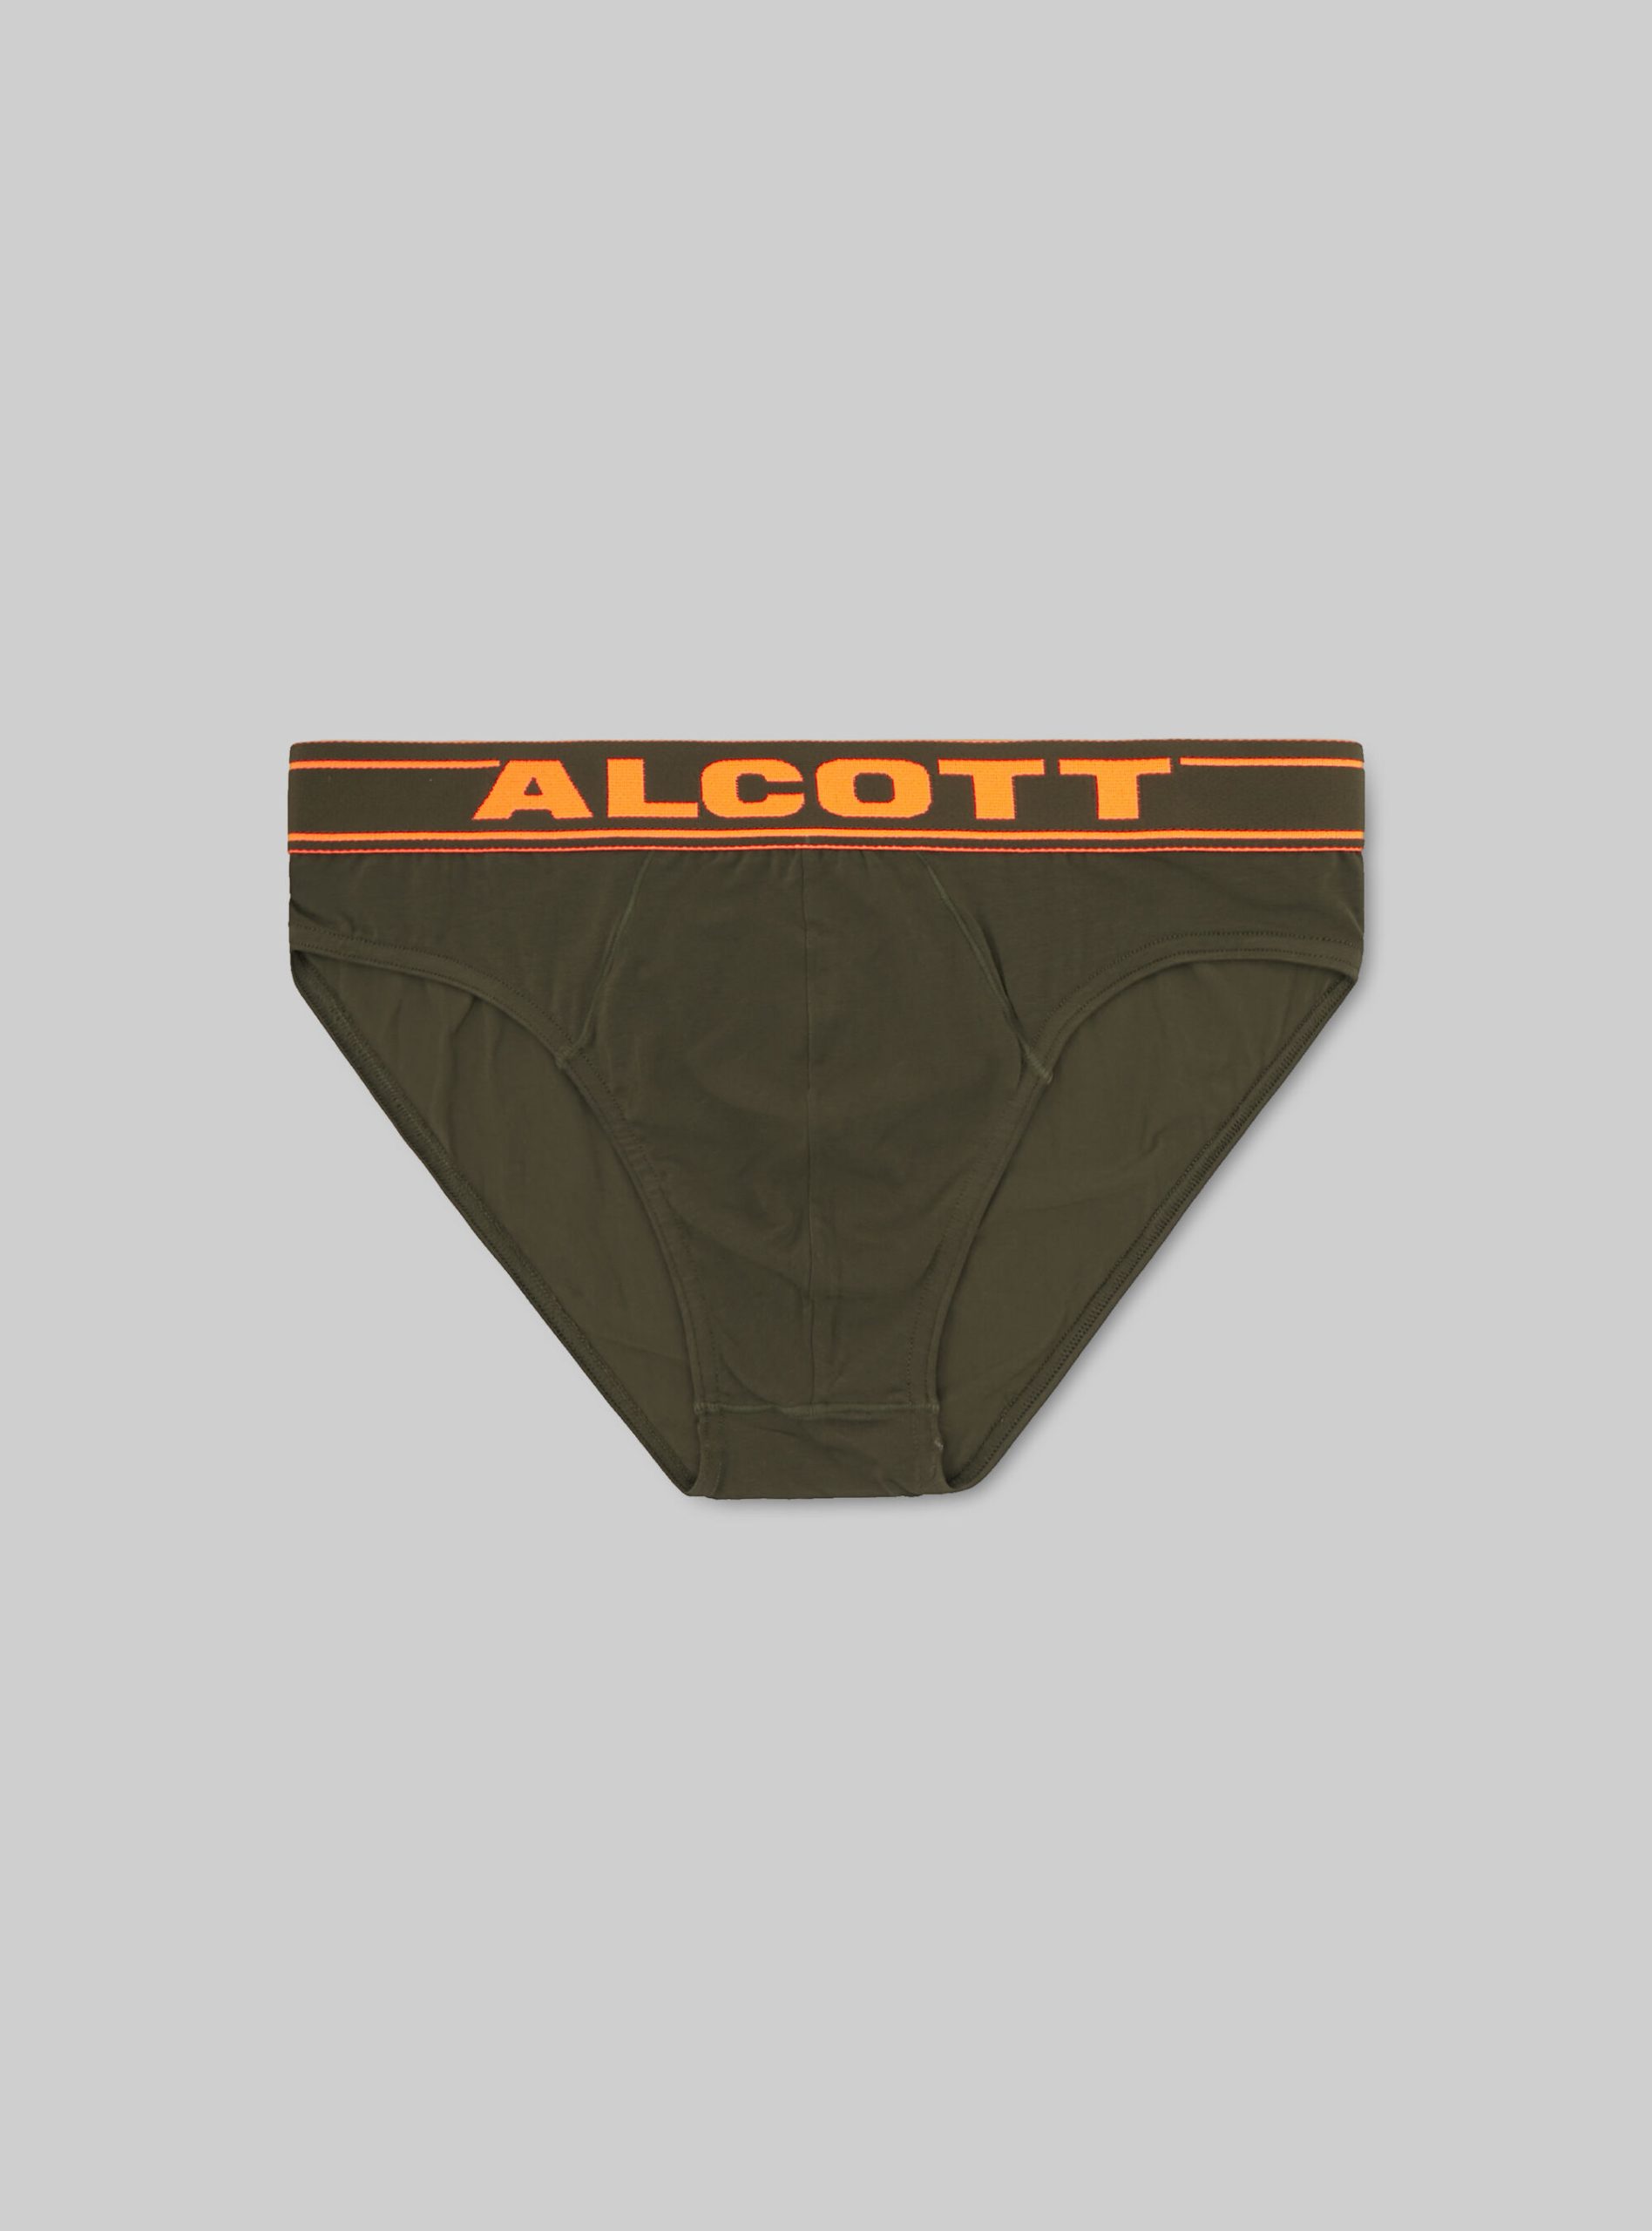 Das Günstigste Ky2 Kaky Medium Männer Unterwäsche Alcott Stretch Cotton Briefs With Logo – 1